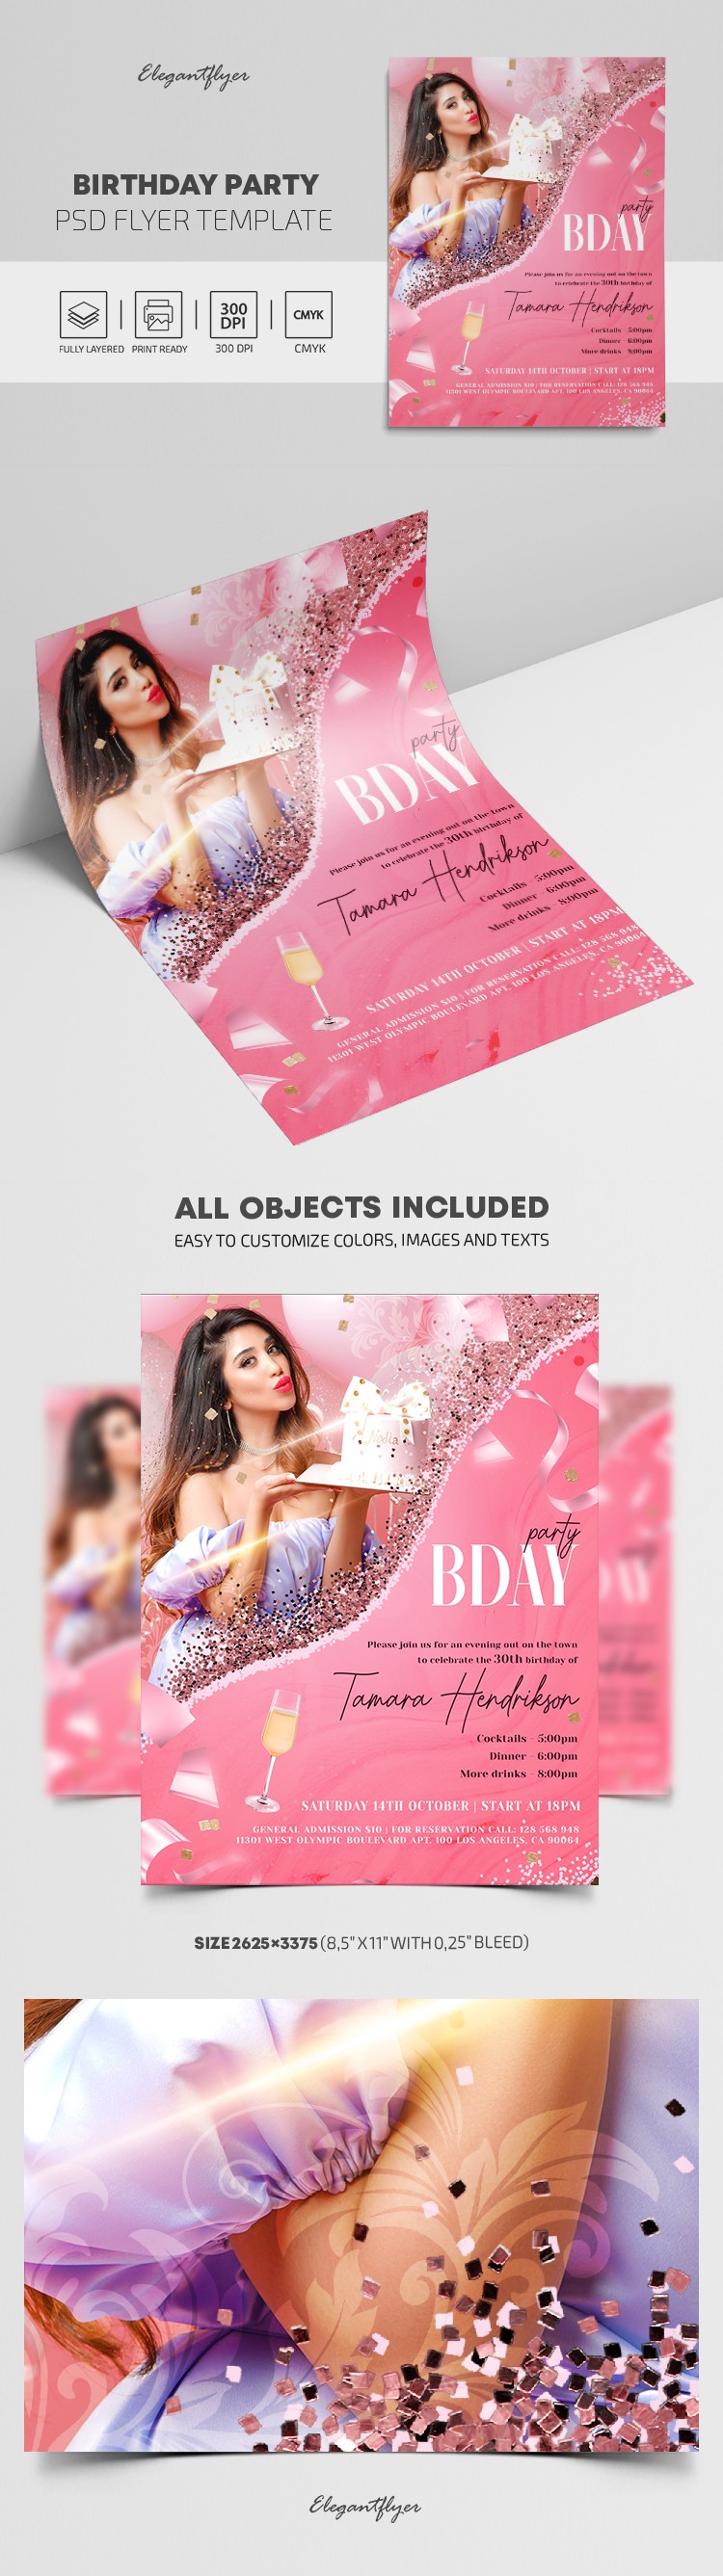 Birthday Party Flyer by ElegantFlyer